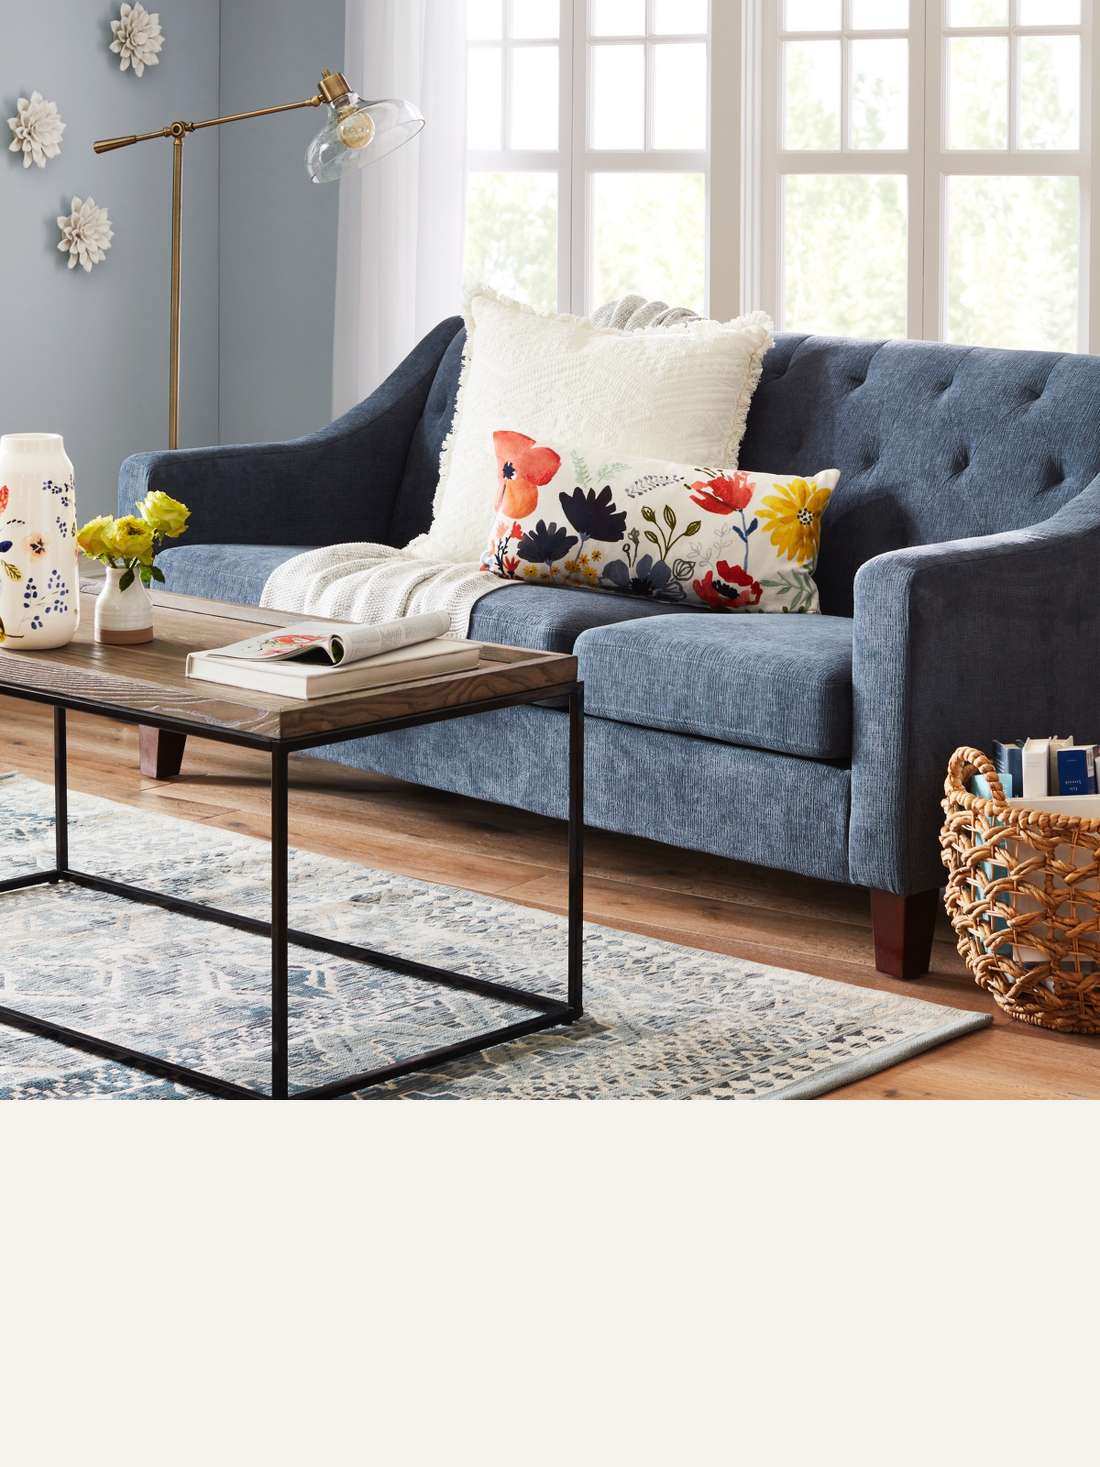 Living Room Modern Sofa Sets Home Design Ideas